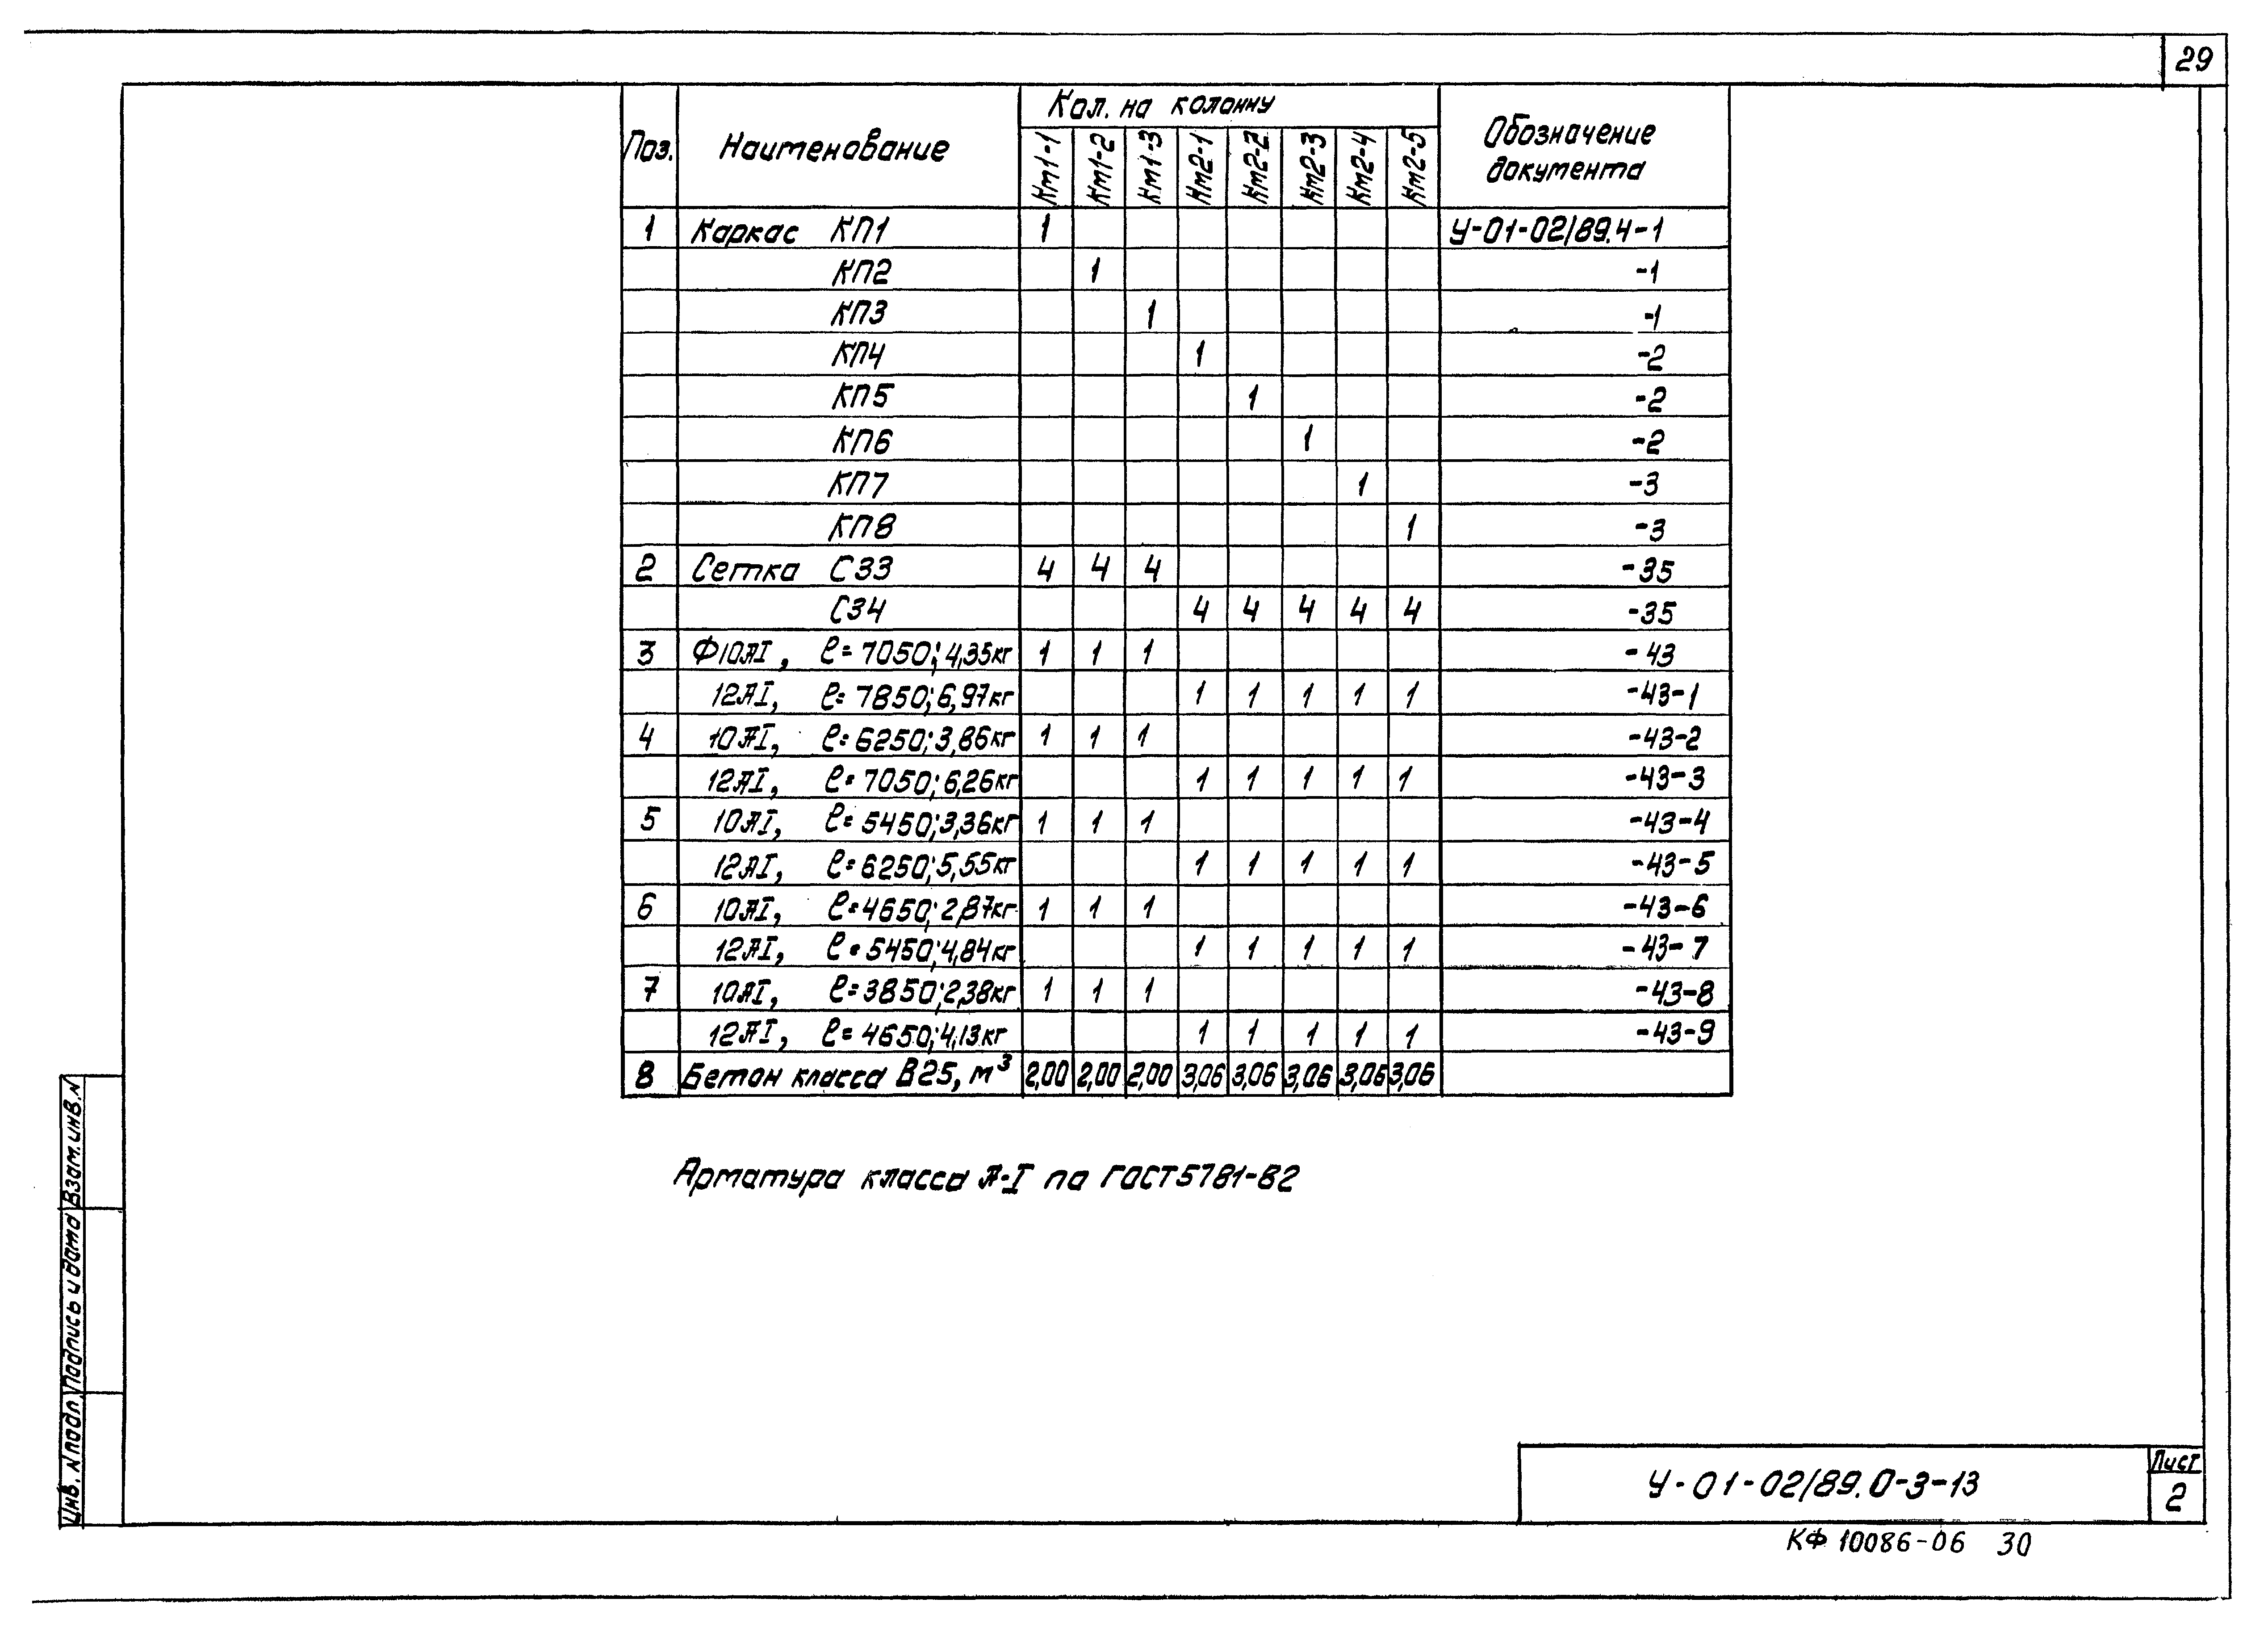 Серия У-01-02/89